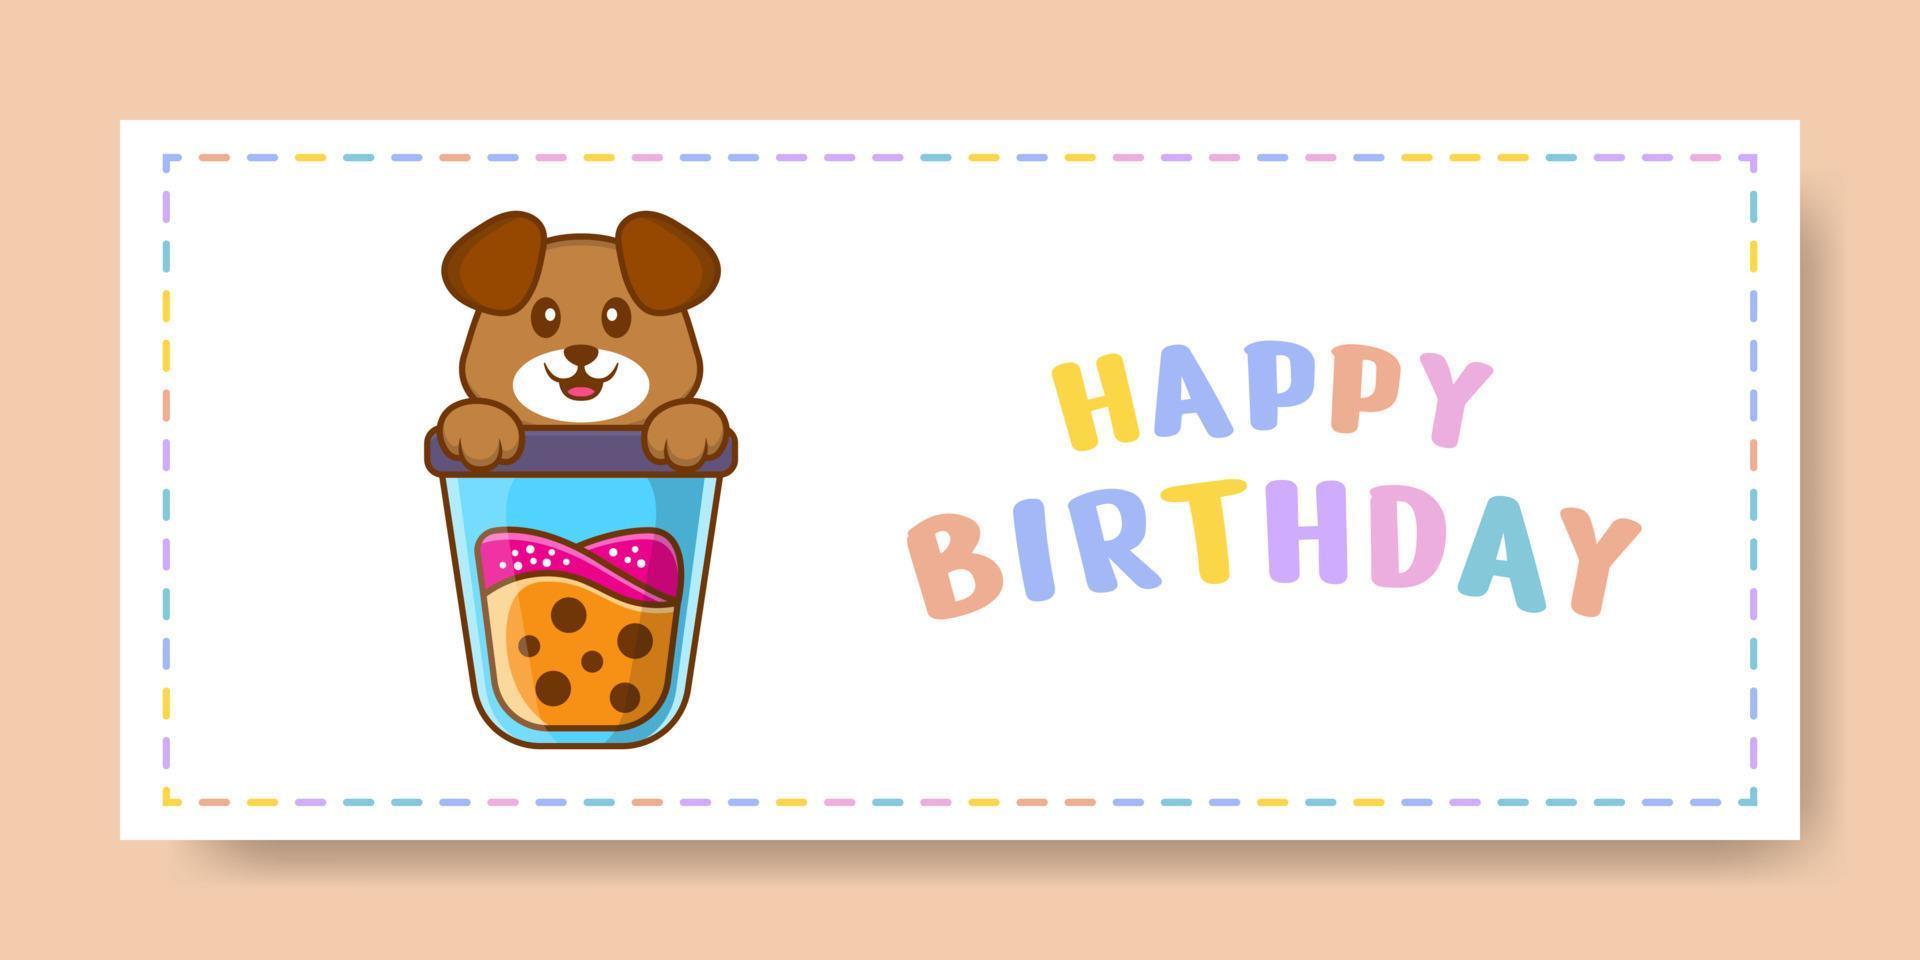 banner de feliz aniversário com personagem de desenho animado de cachorro bonito. ilustração vetorial vetor